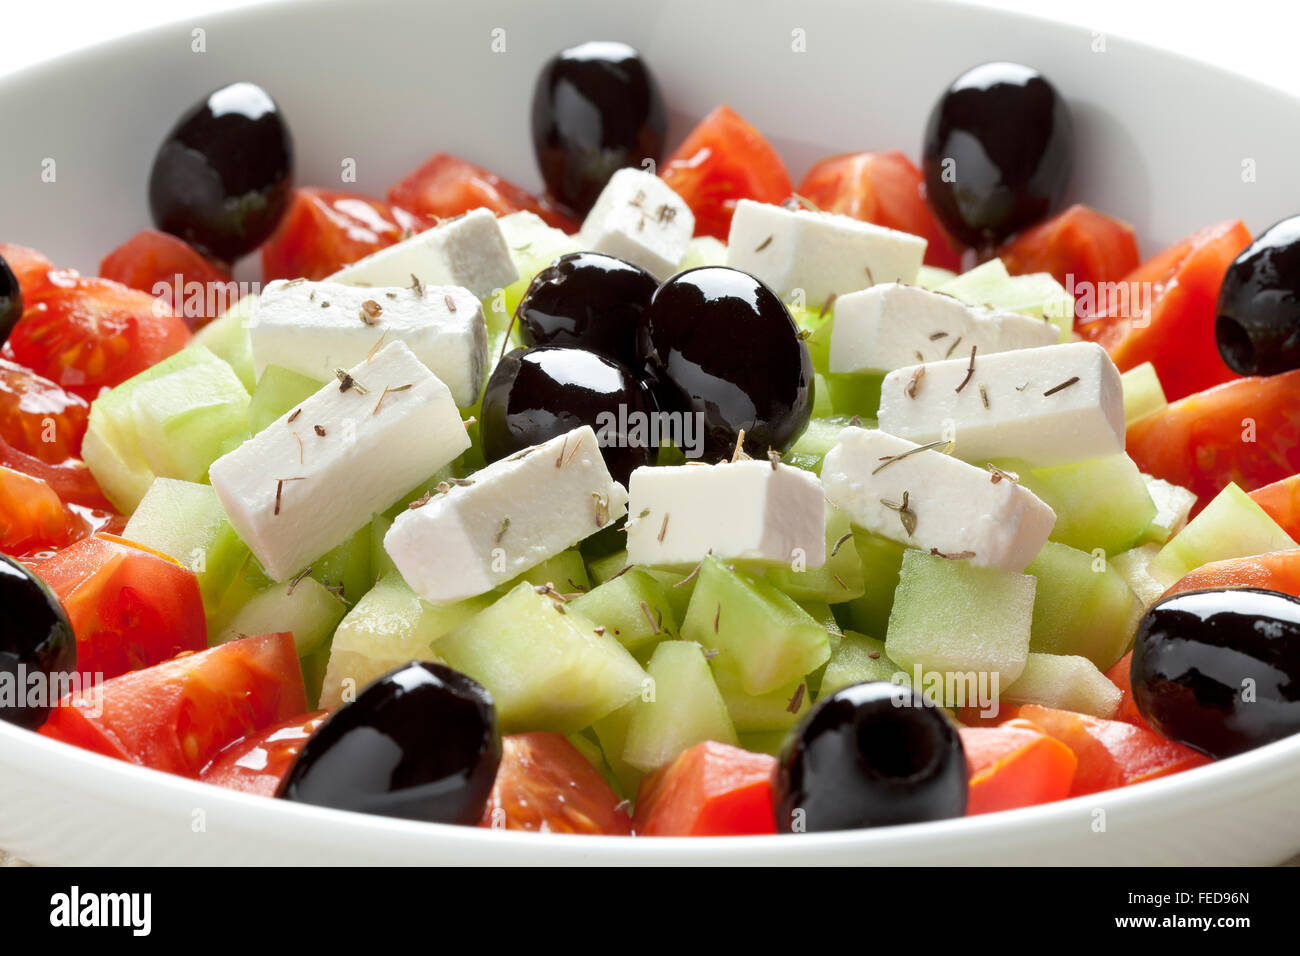 Salade grecque avec fromage feta, olives noires, tomates et concombre Banque D'Images